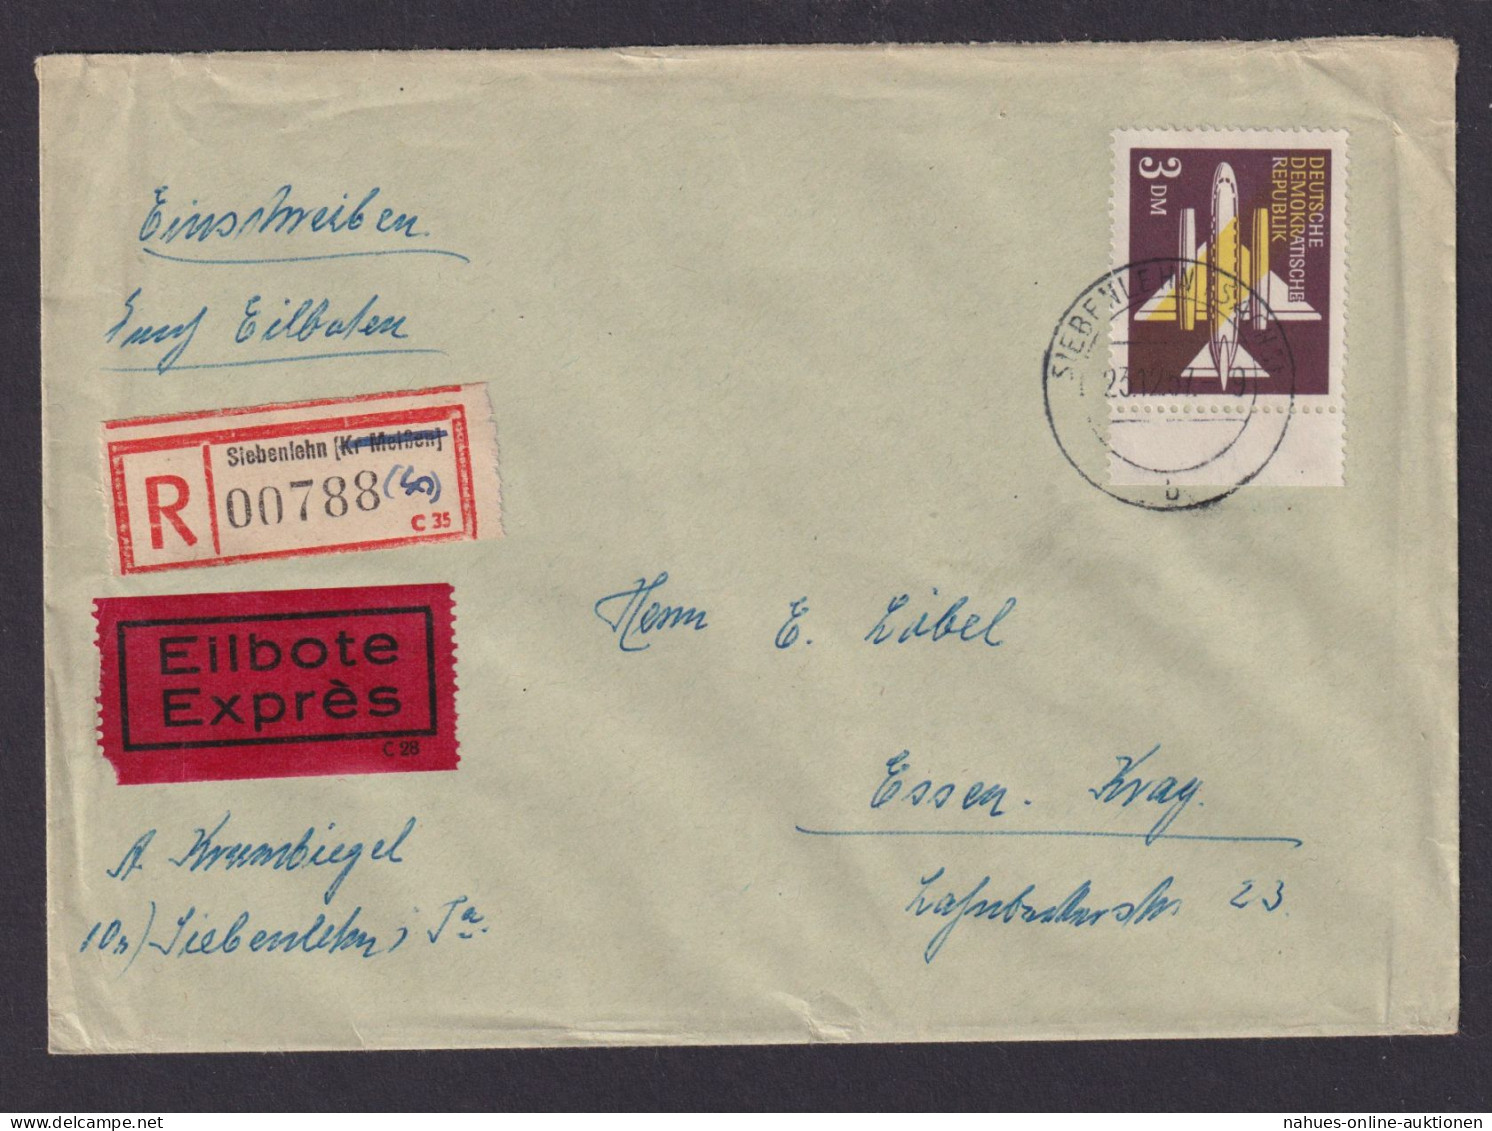 Briefmarken Flugpost Air Mail DDR 3 DM Vom Rand Siebenlehn Essen Kray - Covers & Documents